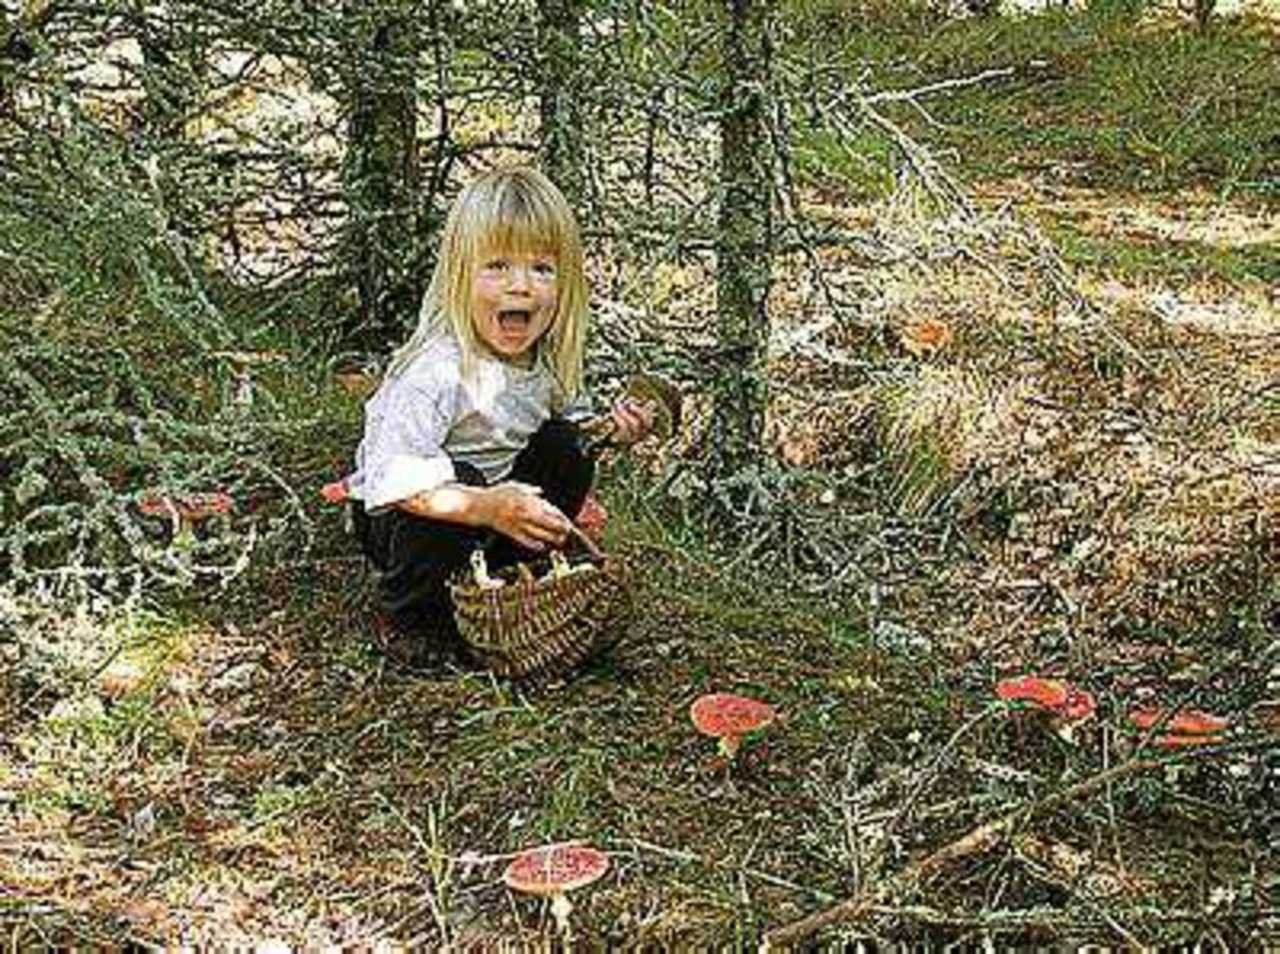 Нашли в лесу малыша. Дети собирают грибы в лесу. Девочка в лесу. Девочка потерялась в лесу. Девочка в лесу собирает грибы.